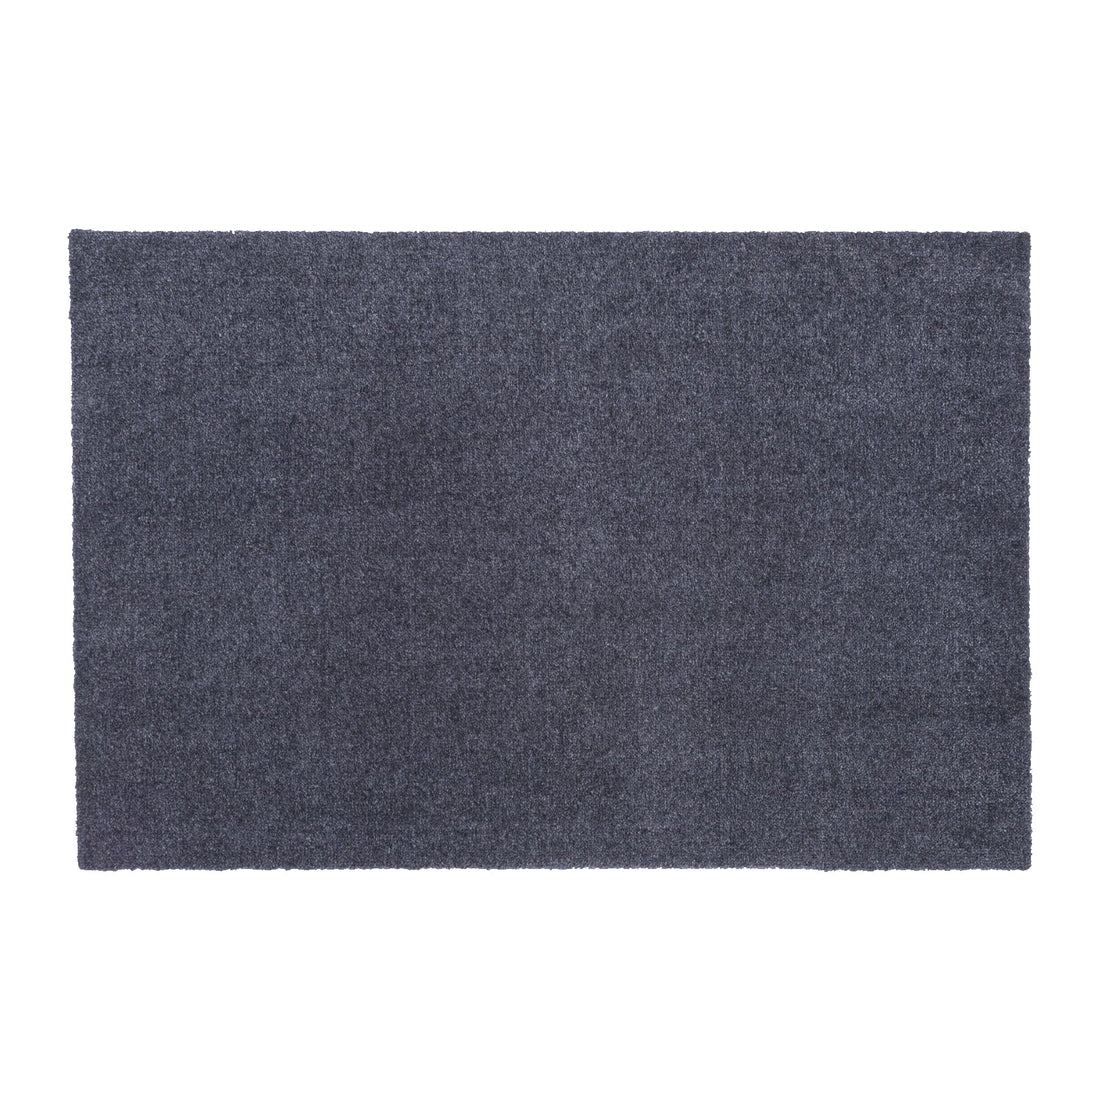 Bodenmatte 60 x 90 cm - Uni Farbe/Grau